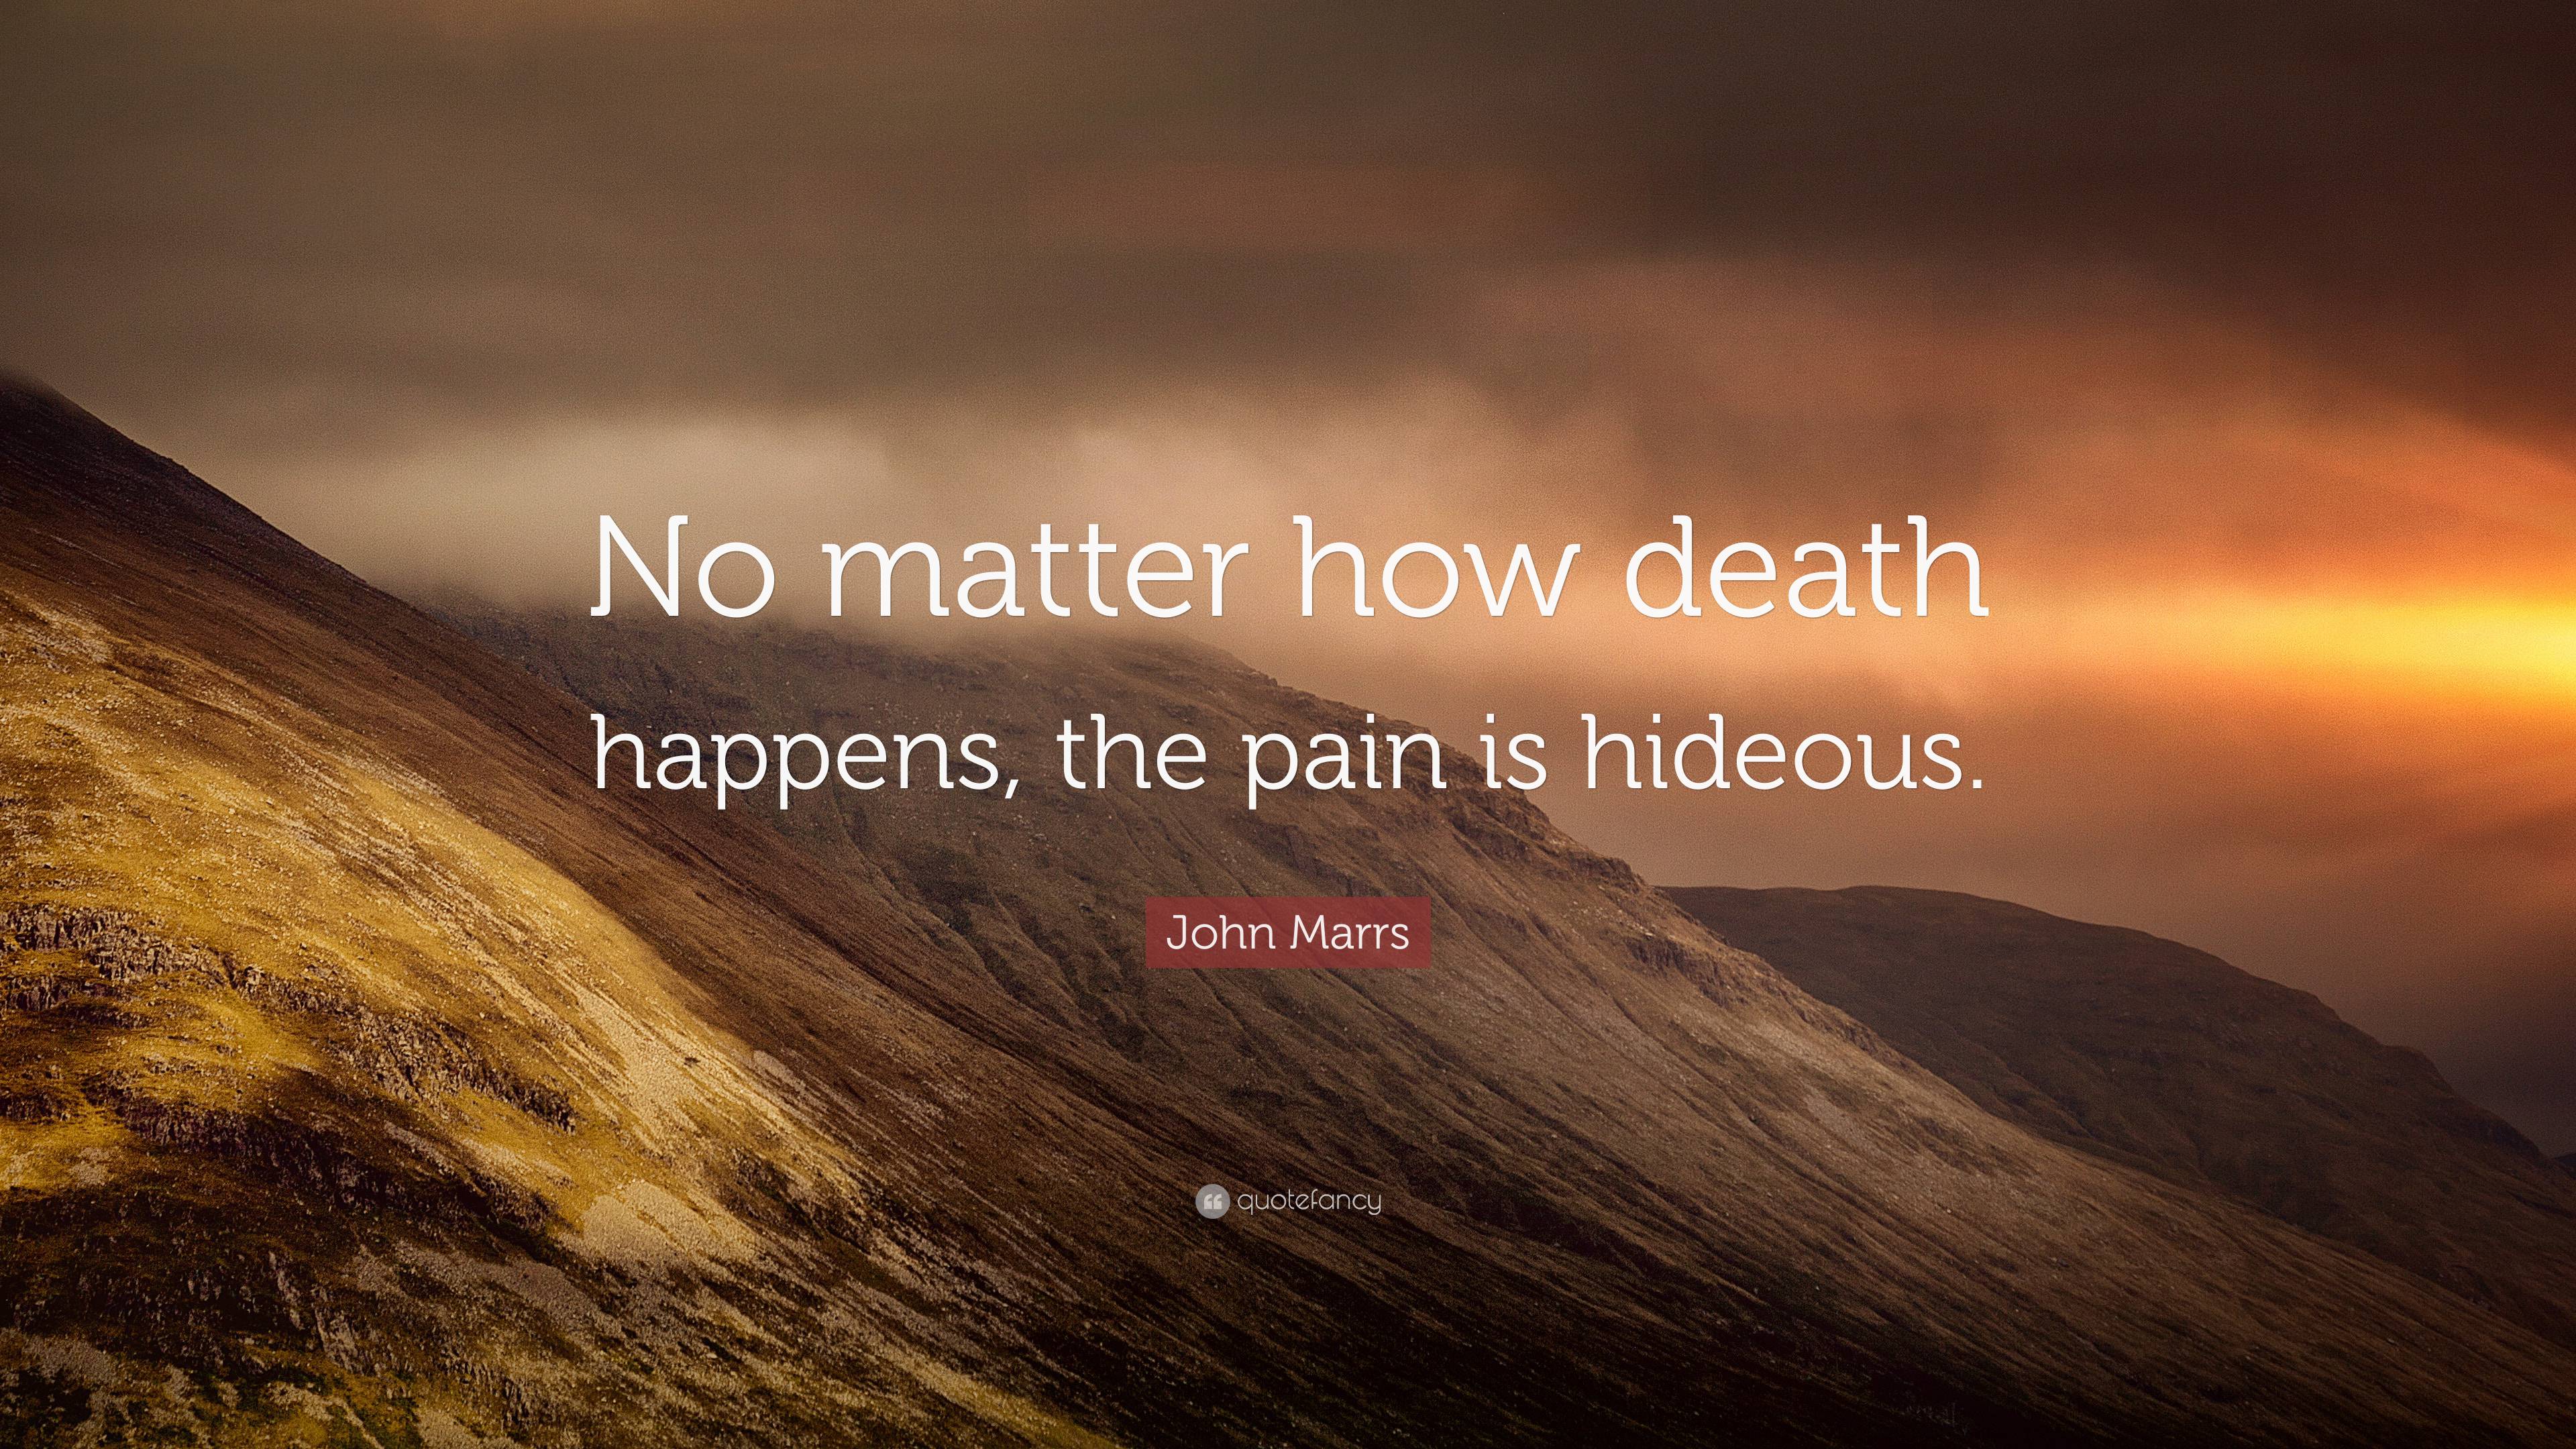 John Marrs Quote: “No matter how death happens, the pain is hideous.”